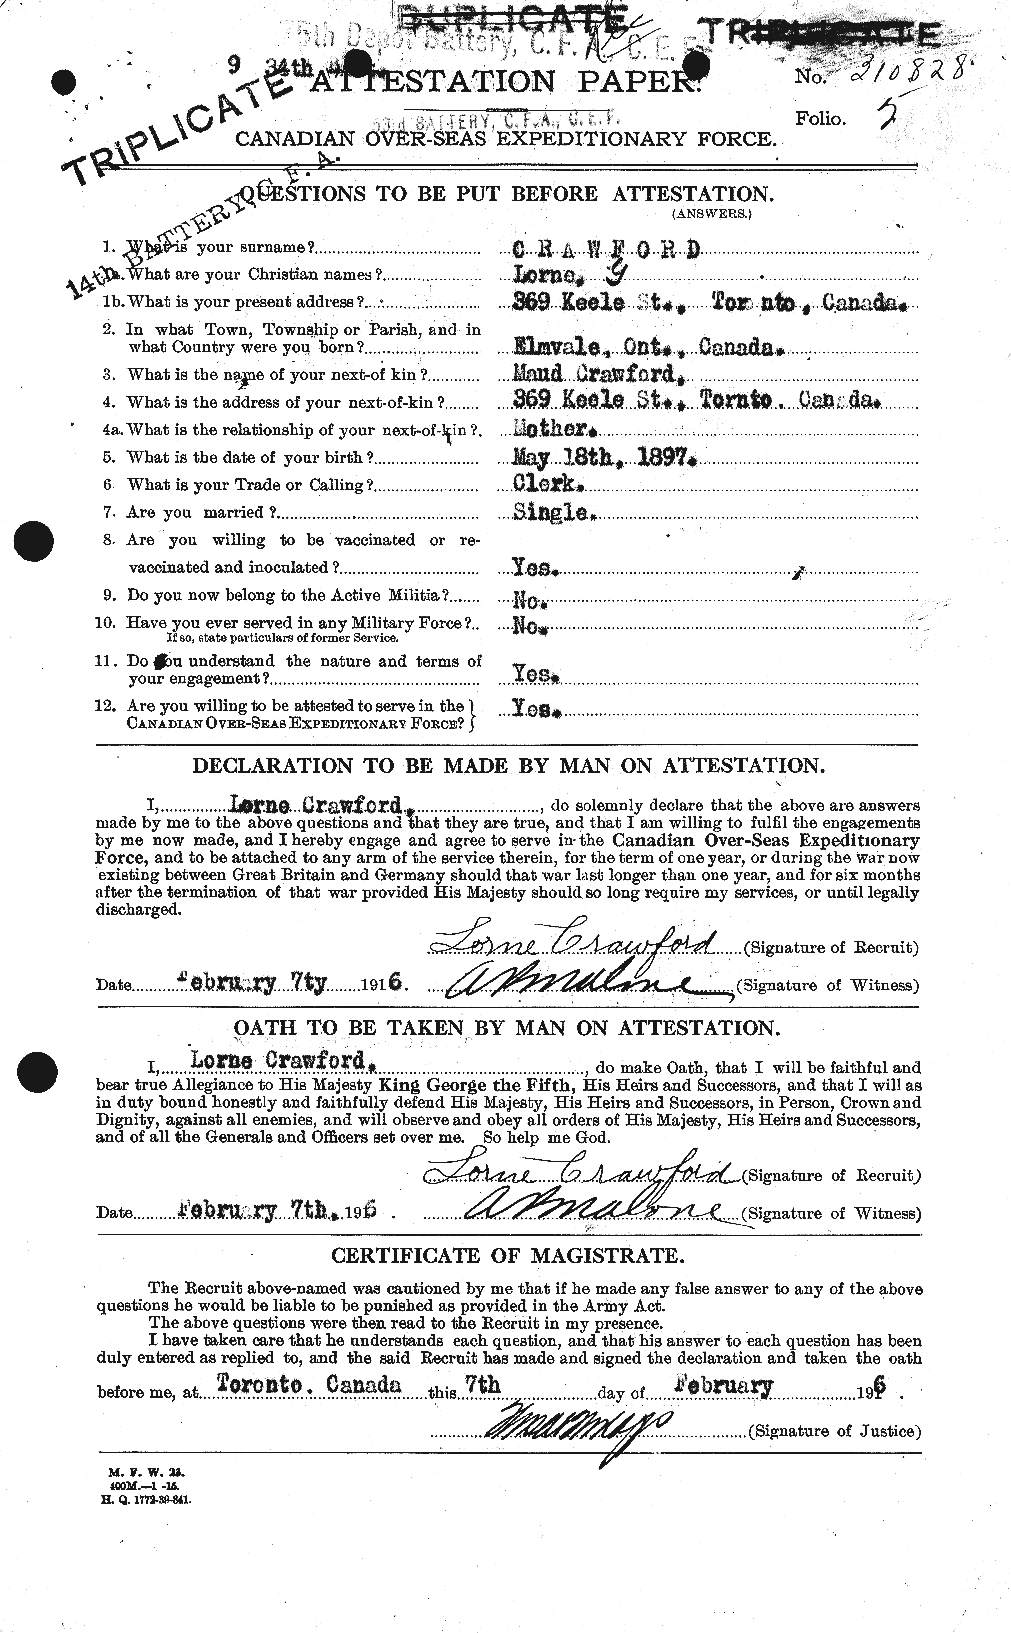 Dossiers du Personnel de la Première Guerre mondiale - CEC 061789a